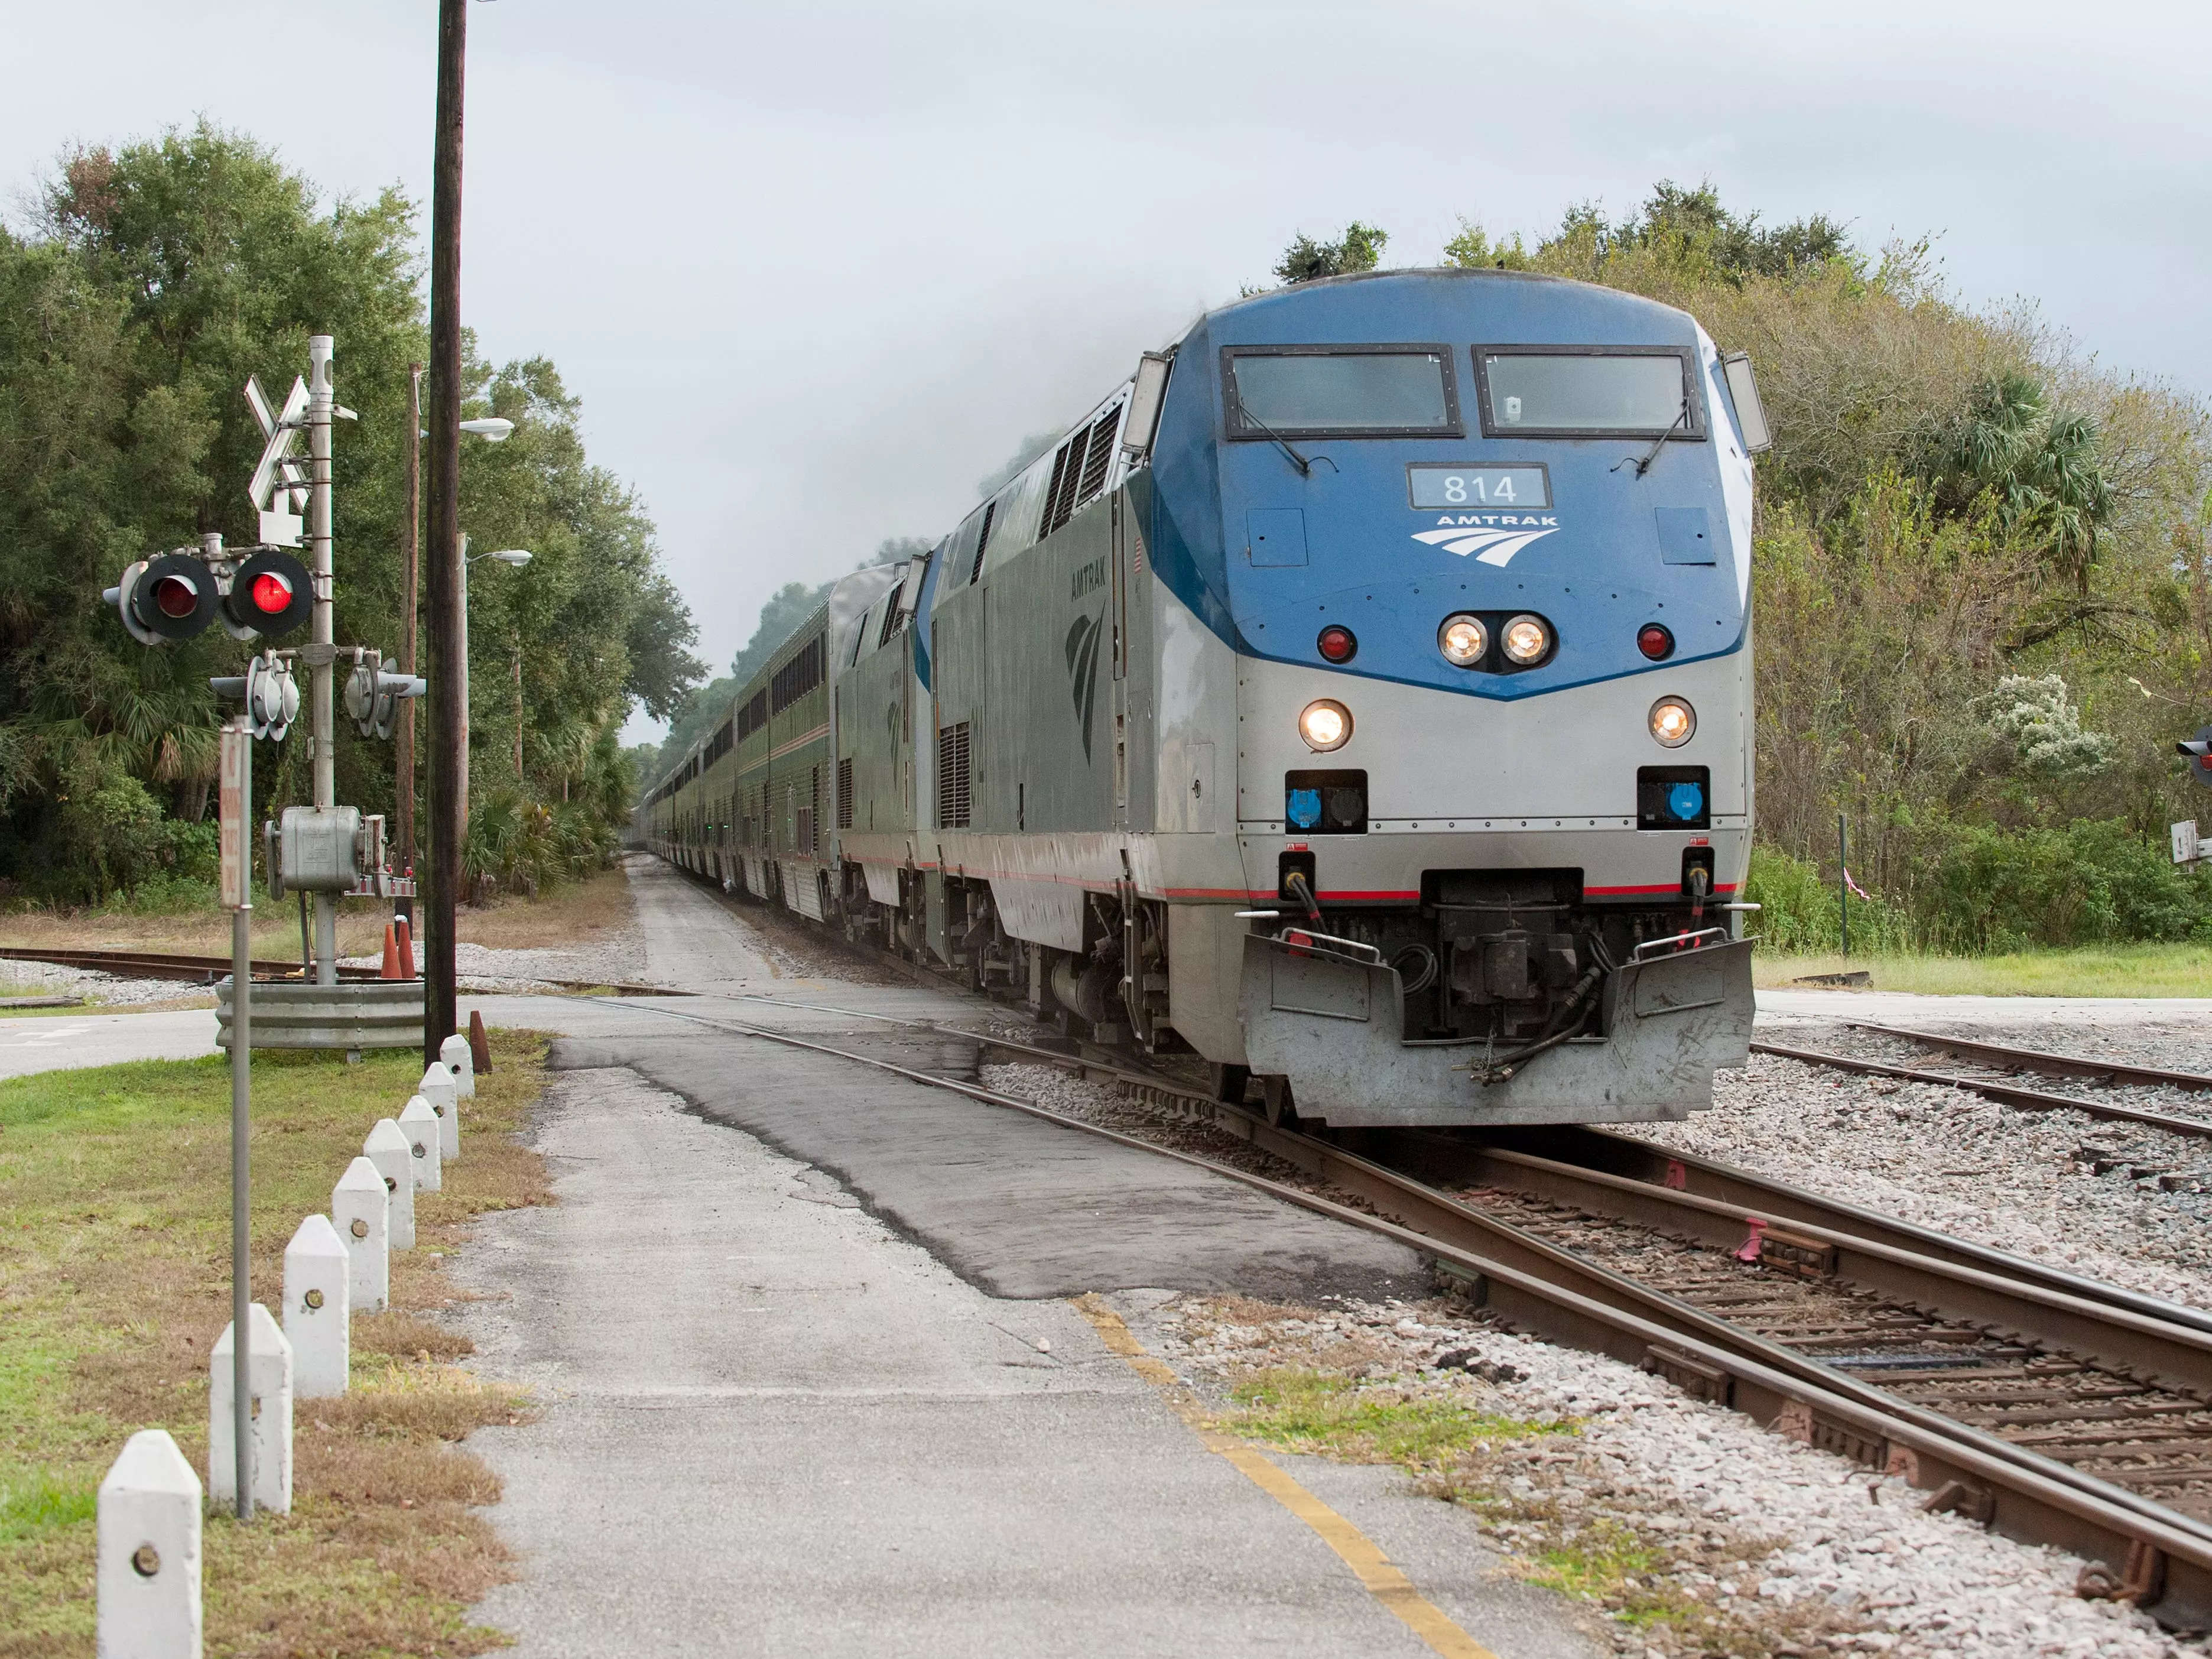 Amtrak Auto train on tracks